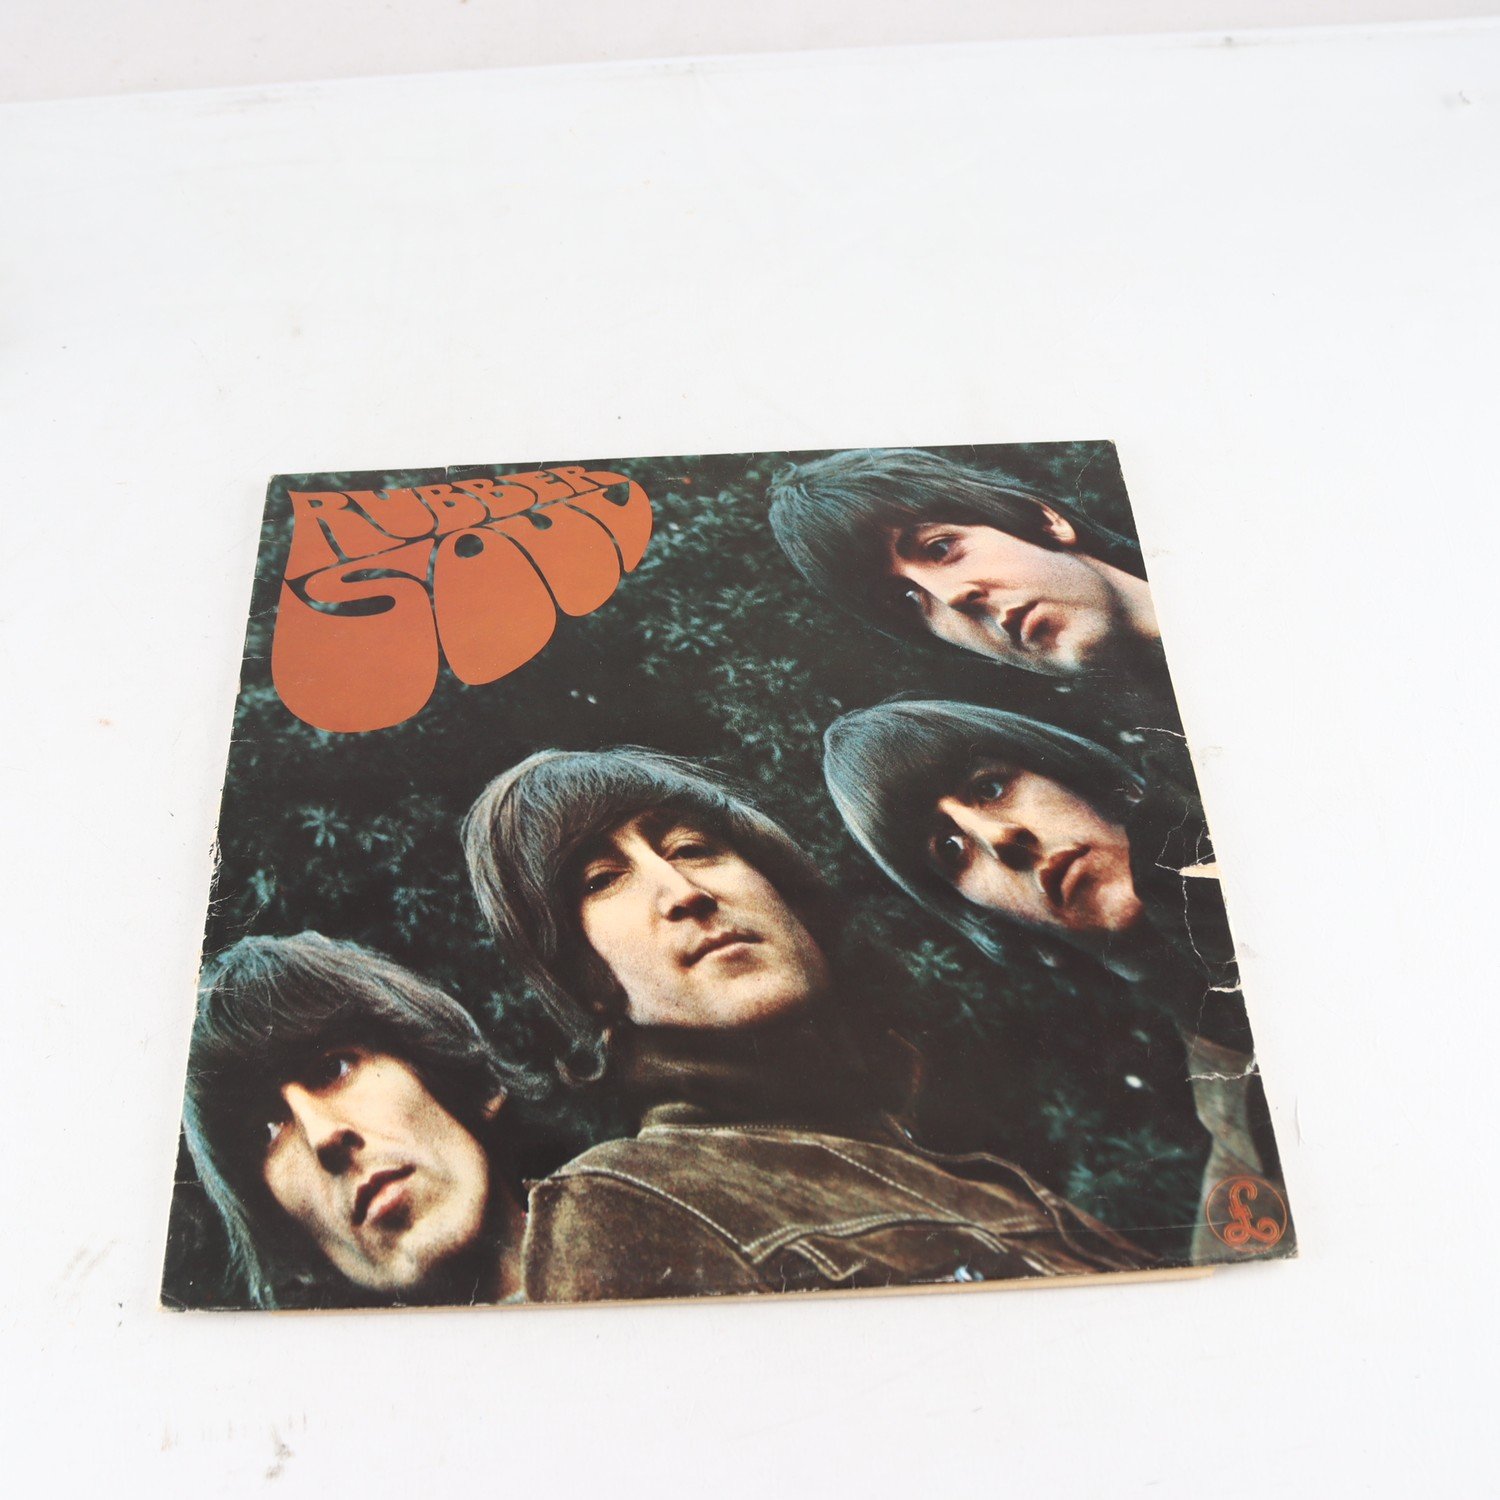 LP The Beatles, Rubber Soul